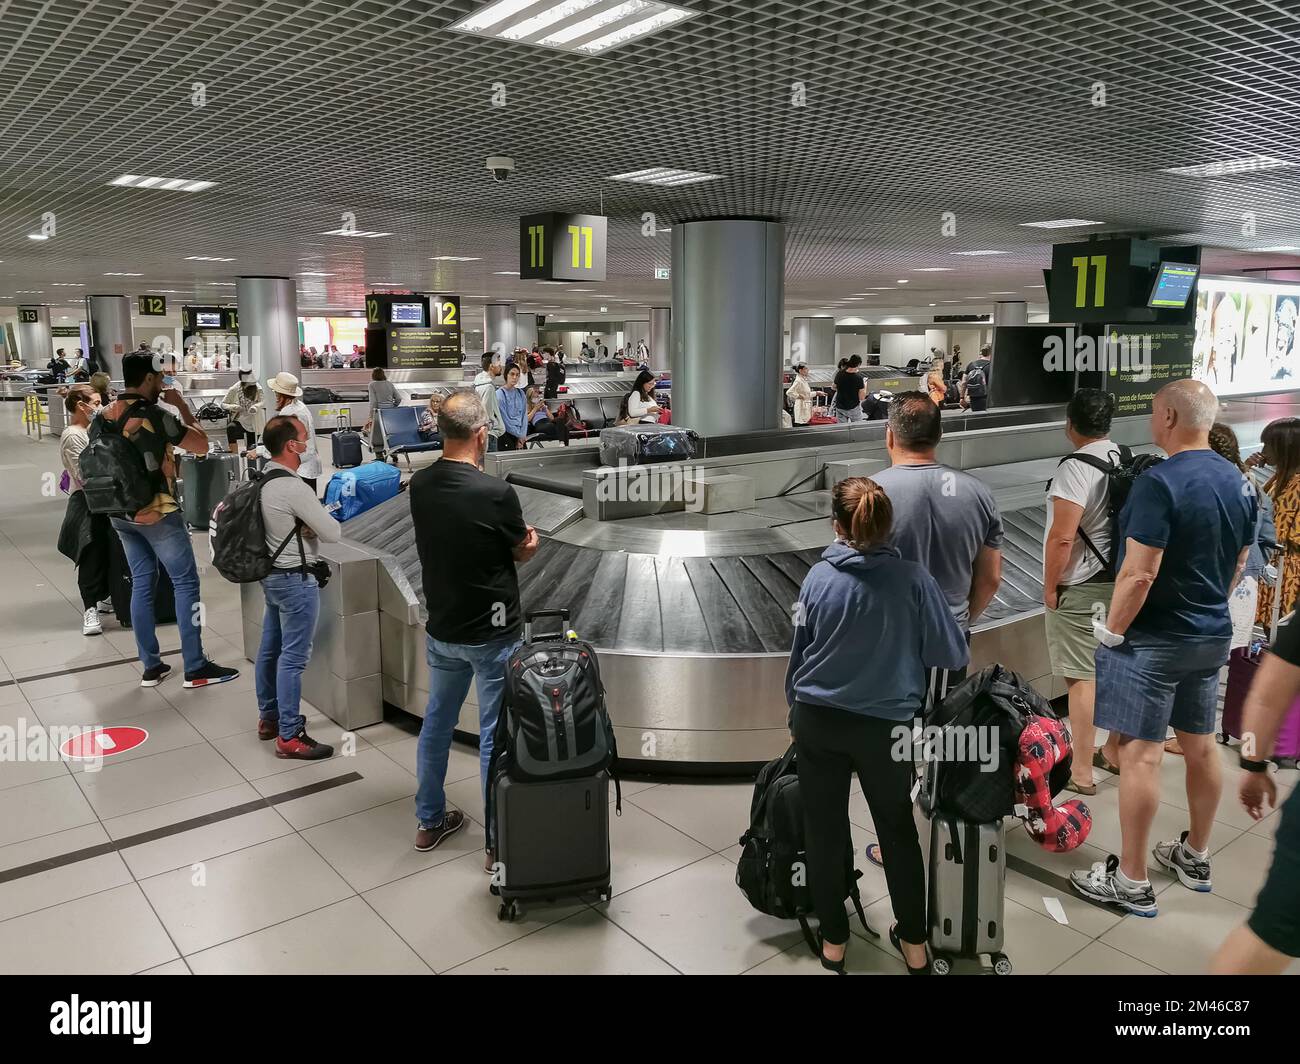 Lisbona Portogallo - 23 07 2022:00: Vista presso la zona di ritiro bagagli o l'area di ritiro bagagli nell'edificio del terminal dell'aeroporto di Lisbona, le persone in attesa del loro lugg Foto Stock